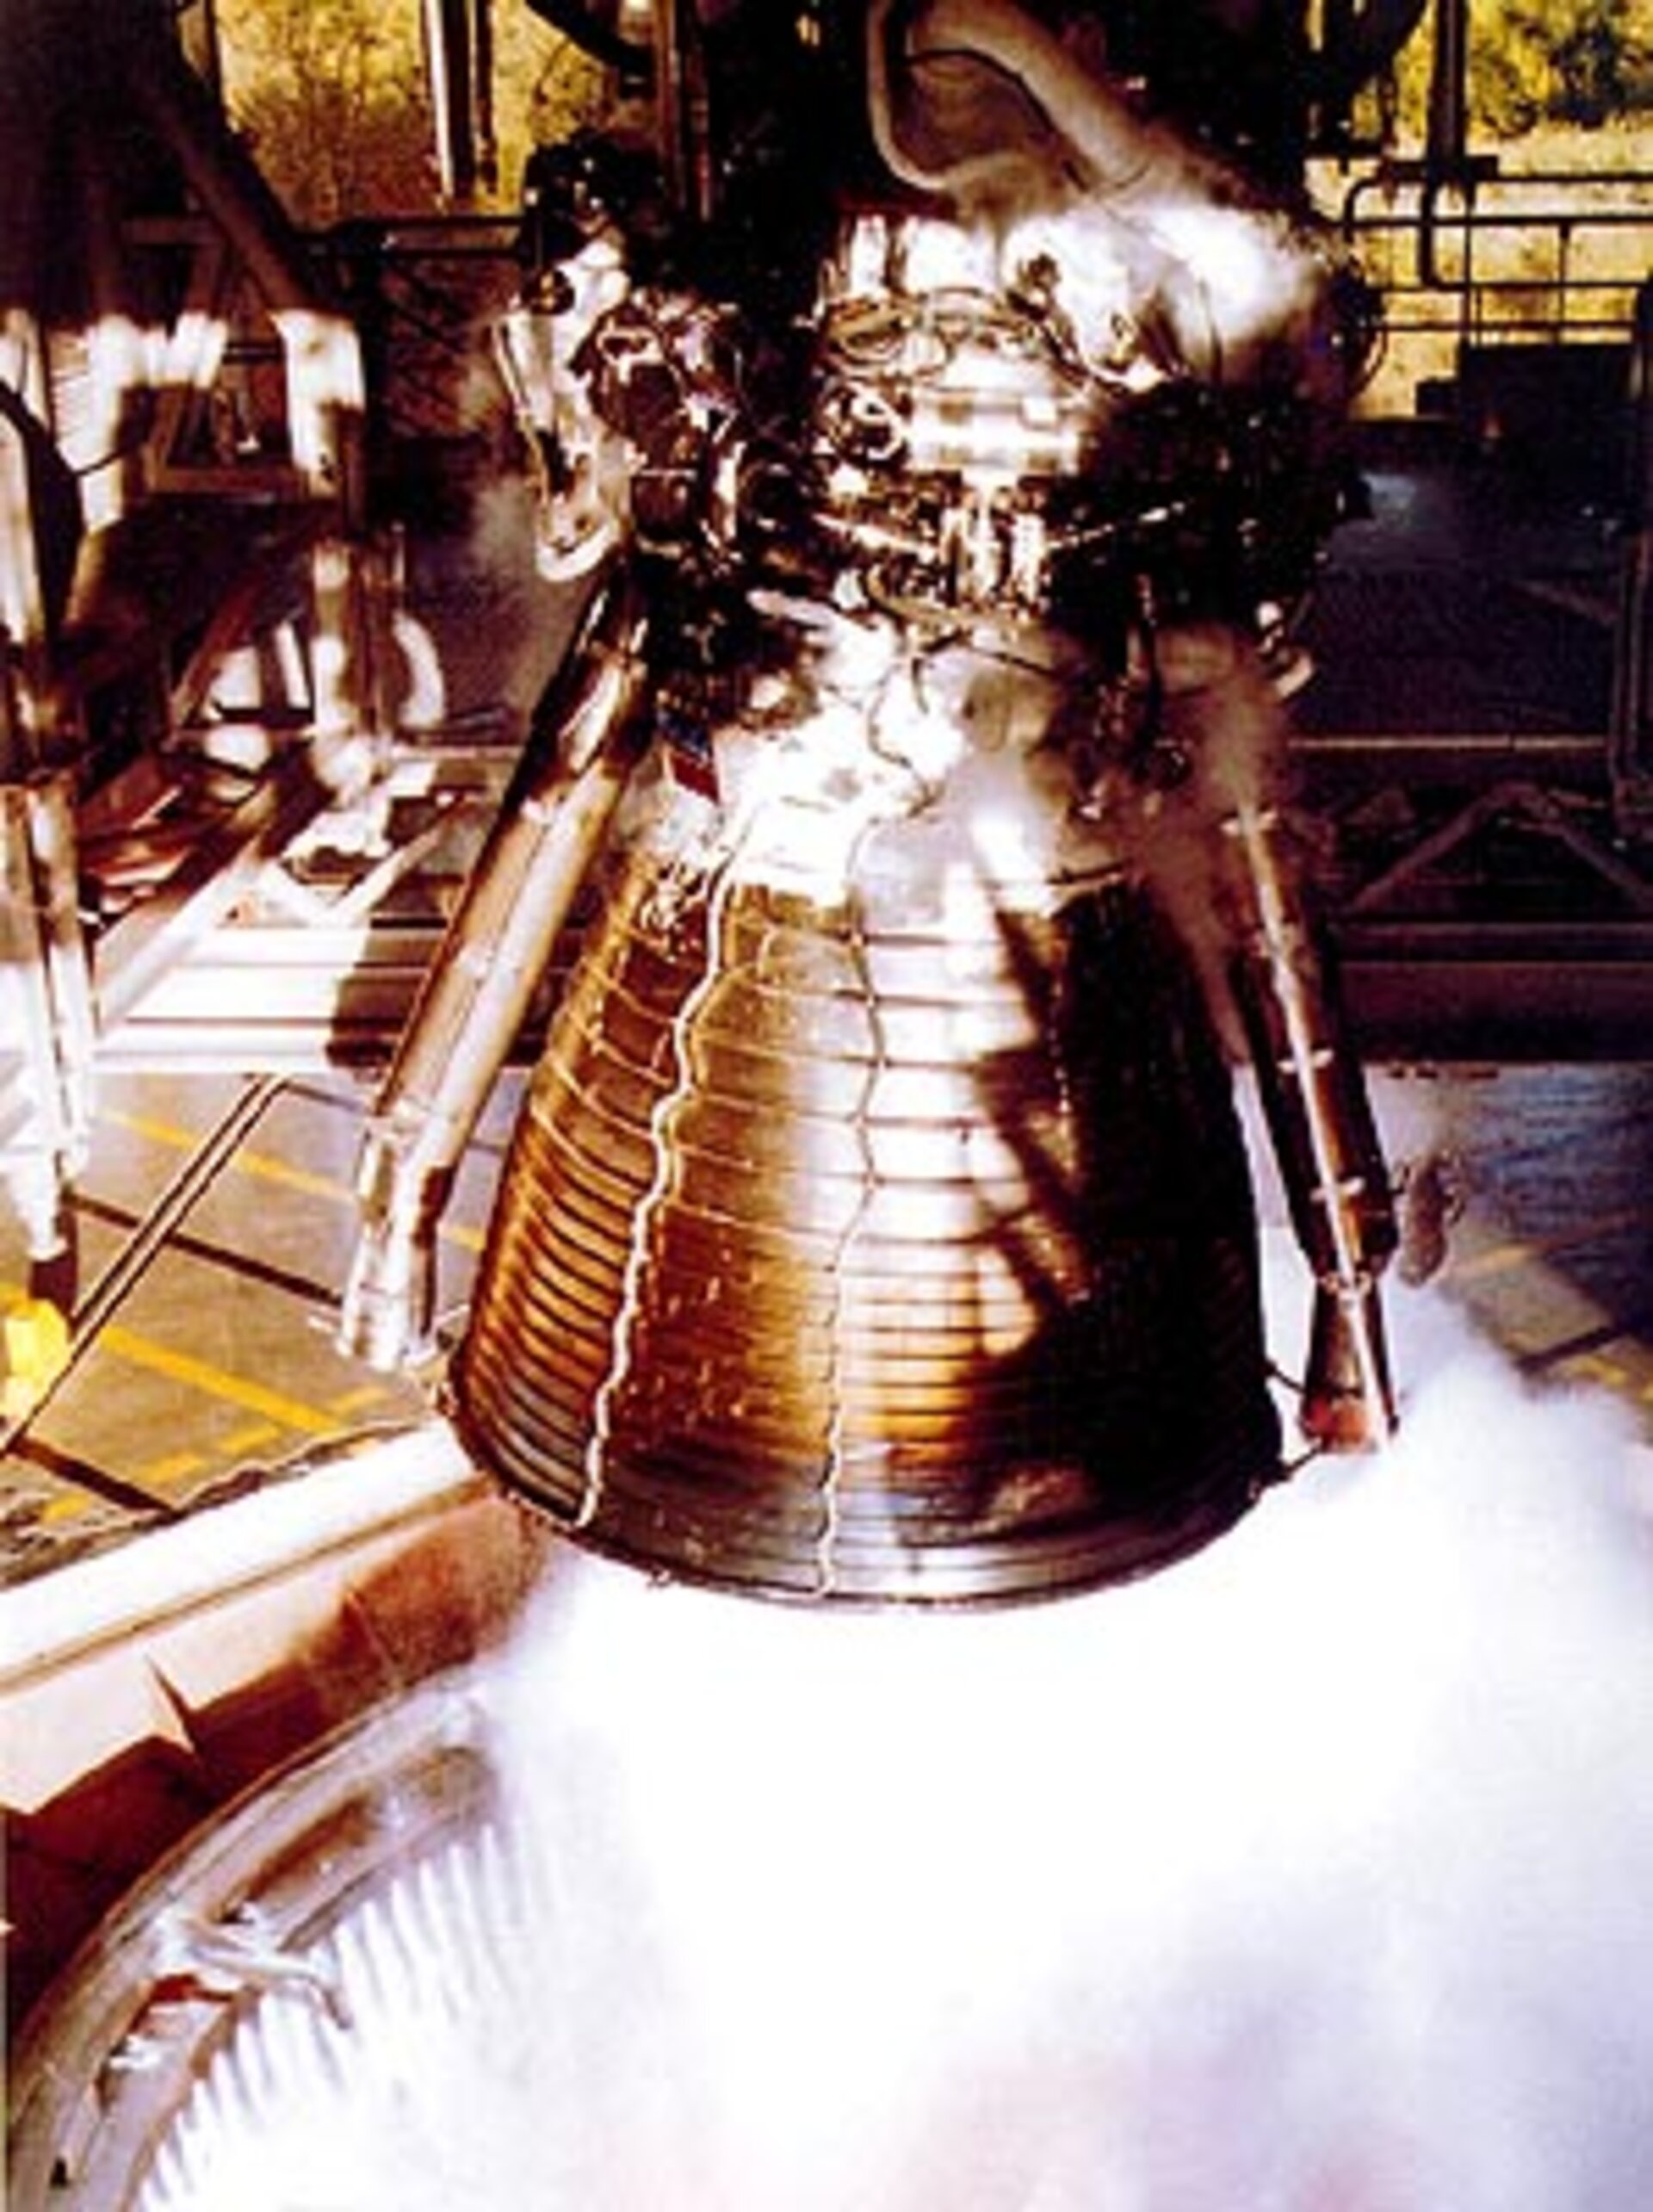 The Ariane-5 cryogenic vulcain engine